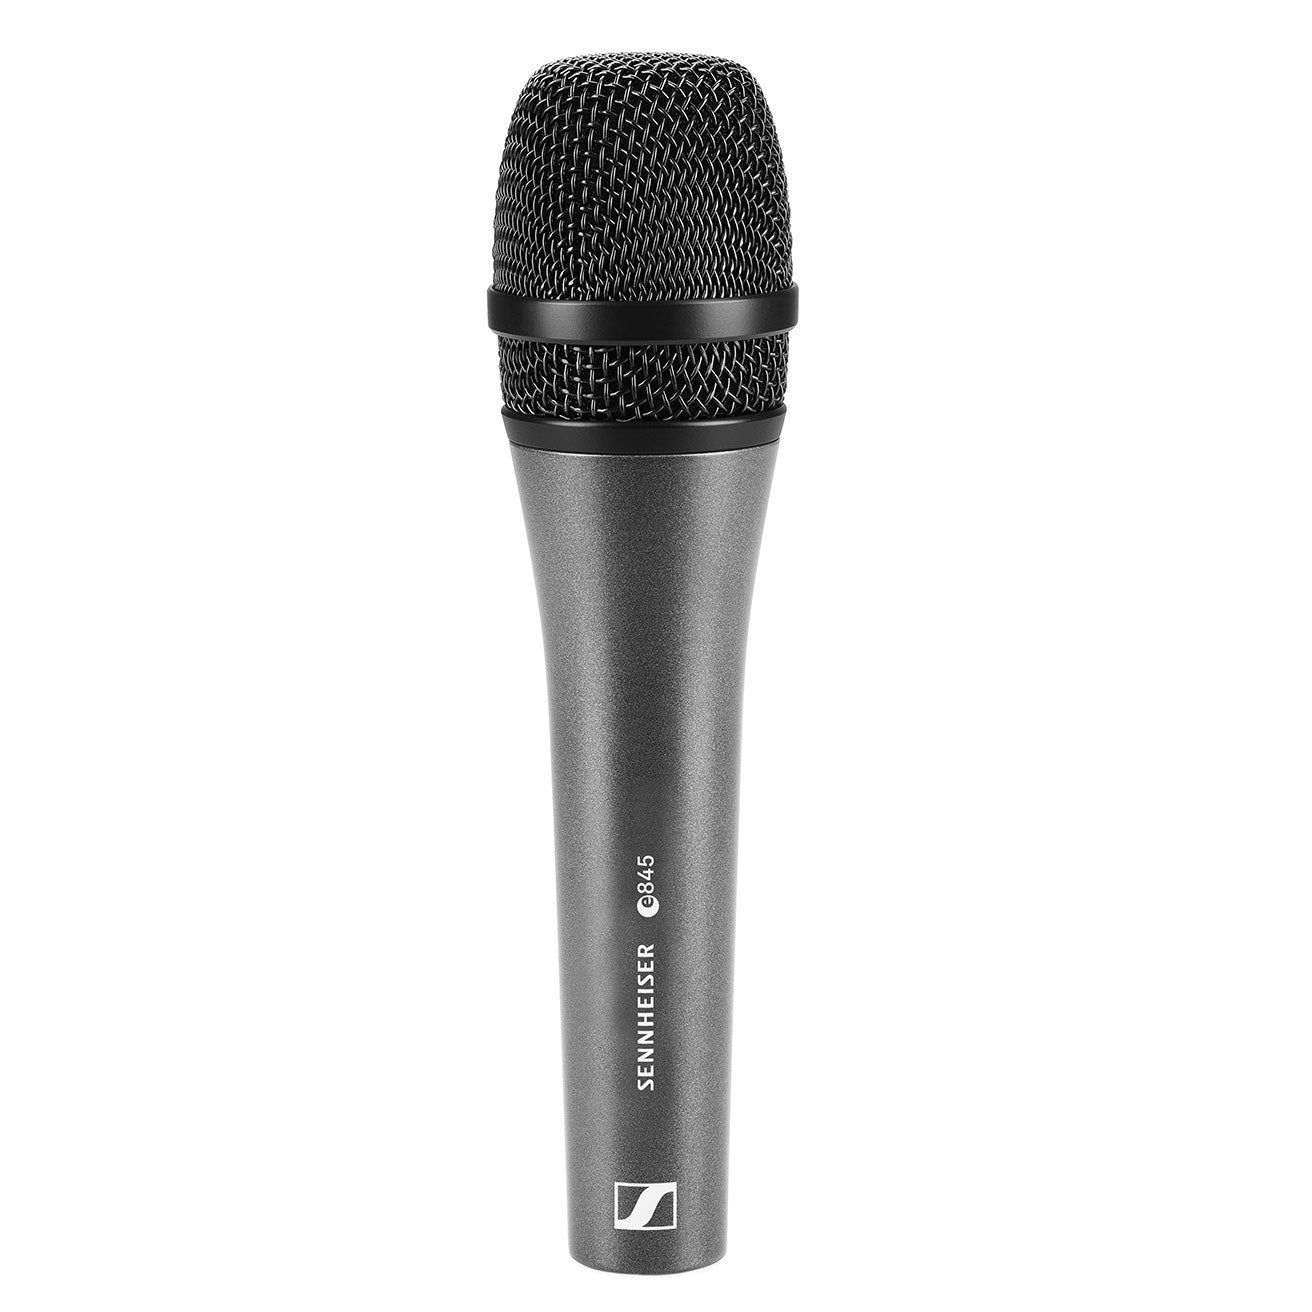 Sennheiser Vocal Microphone - Dynamic Super Cardioid e 845